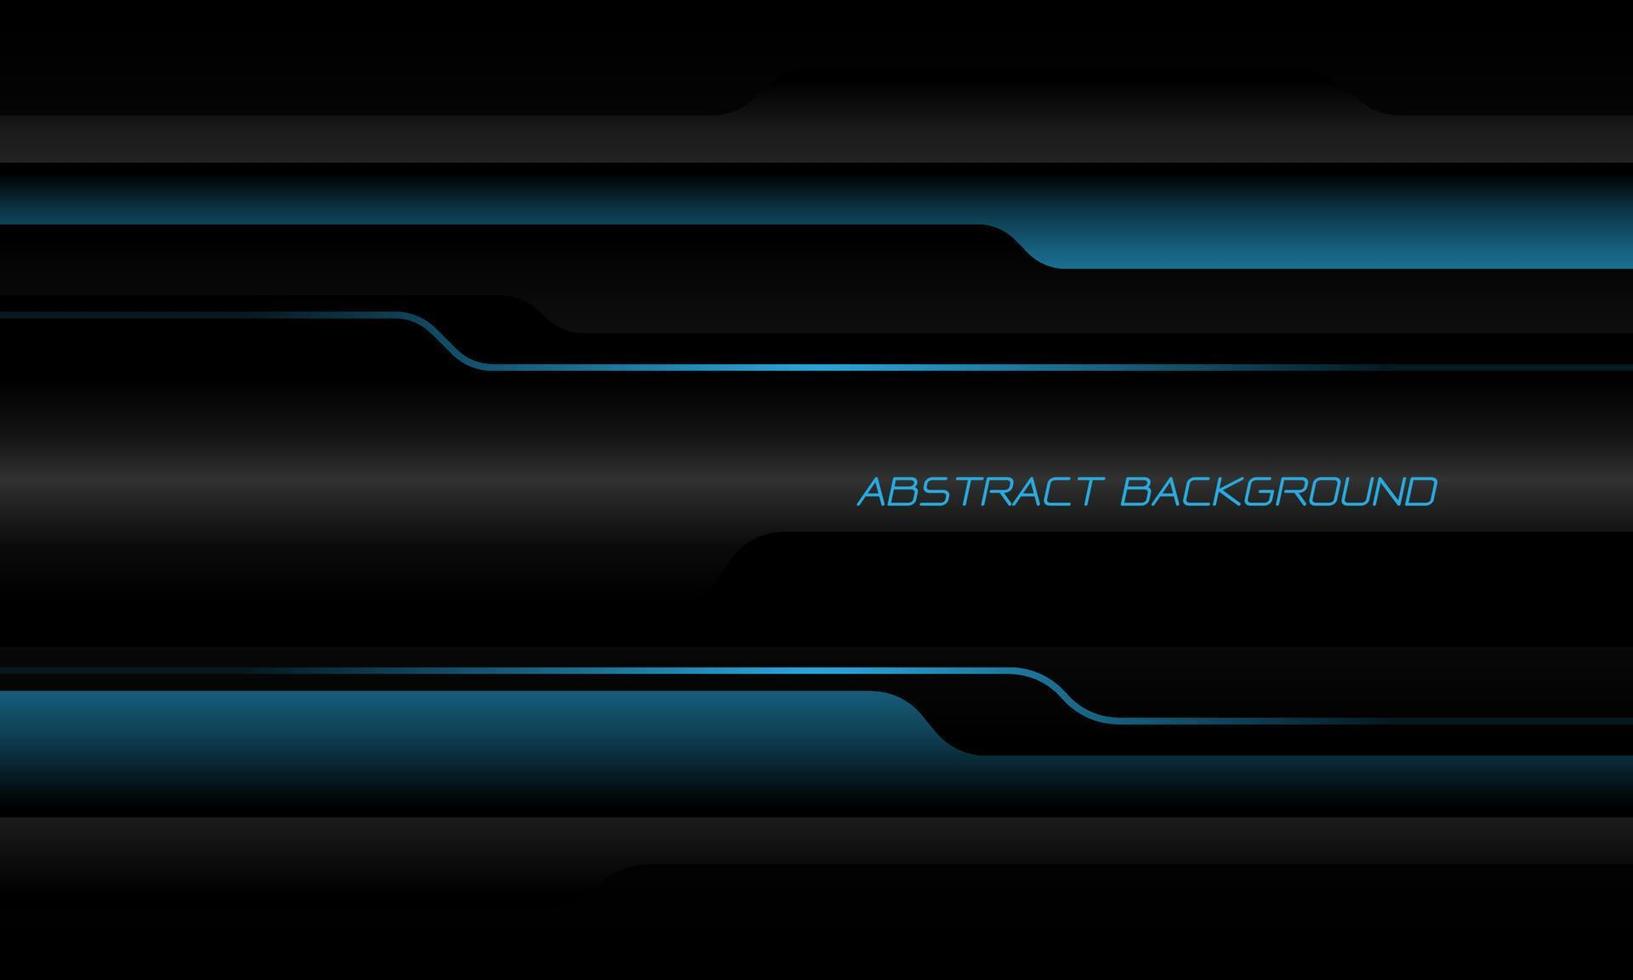 abstrato azul cinza preto sobreposição metálica sombra cibernética design geométrico luxo moderno tecnologia futurista vetor de fundo